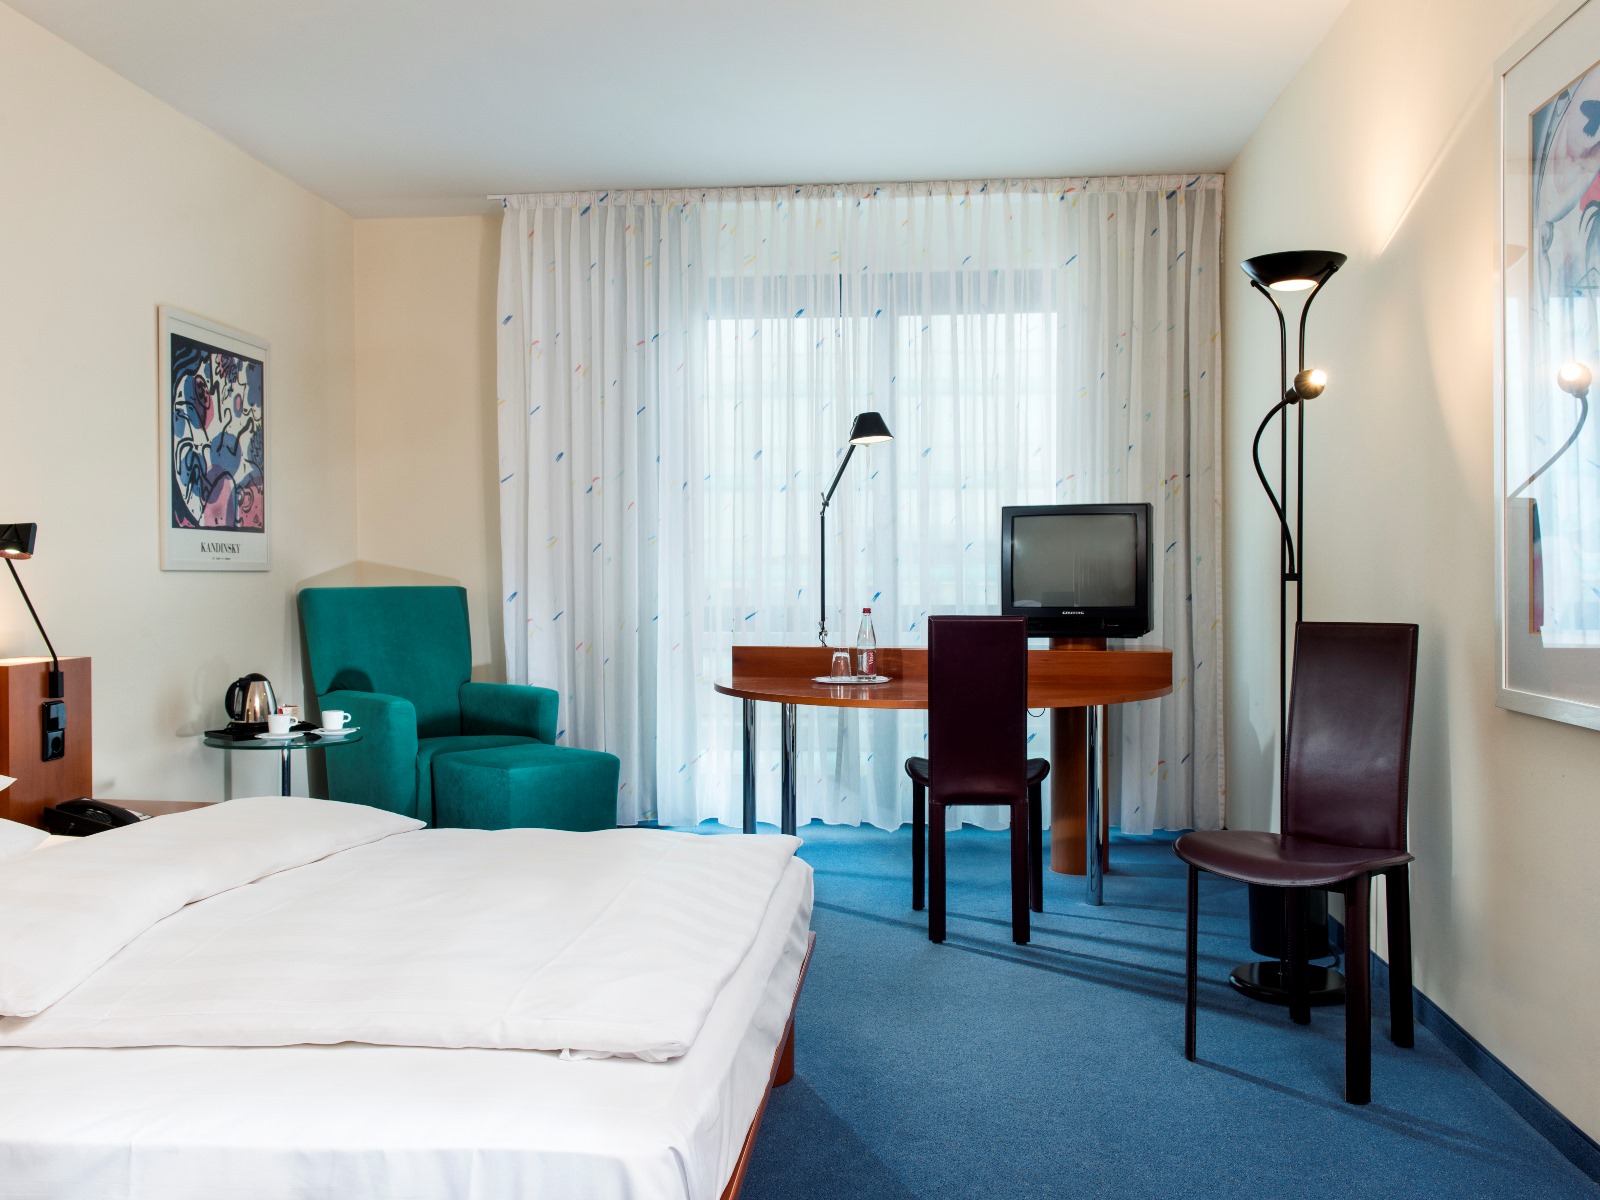 Radisson Blu Hotel Fürst Leopold Dessau <br/>75.60 ew <br/> <a href='http://vakantieoplossing.nl/outpage/?id=d4d0b1b33a02ecc12693c5cda7e1efa2' target='_blank'>View Details</a>